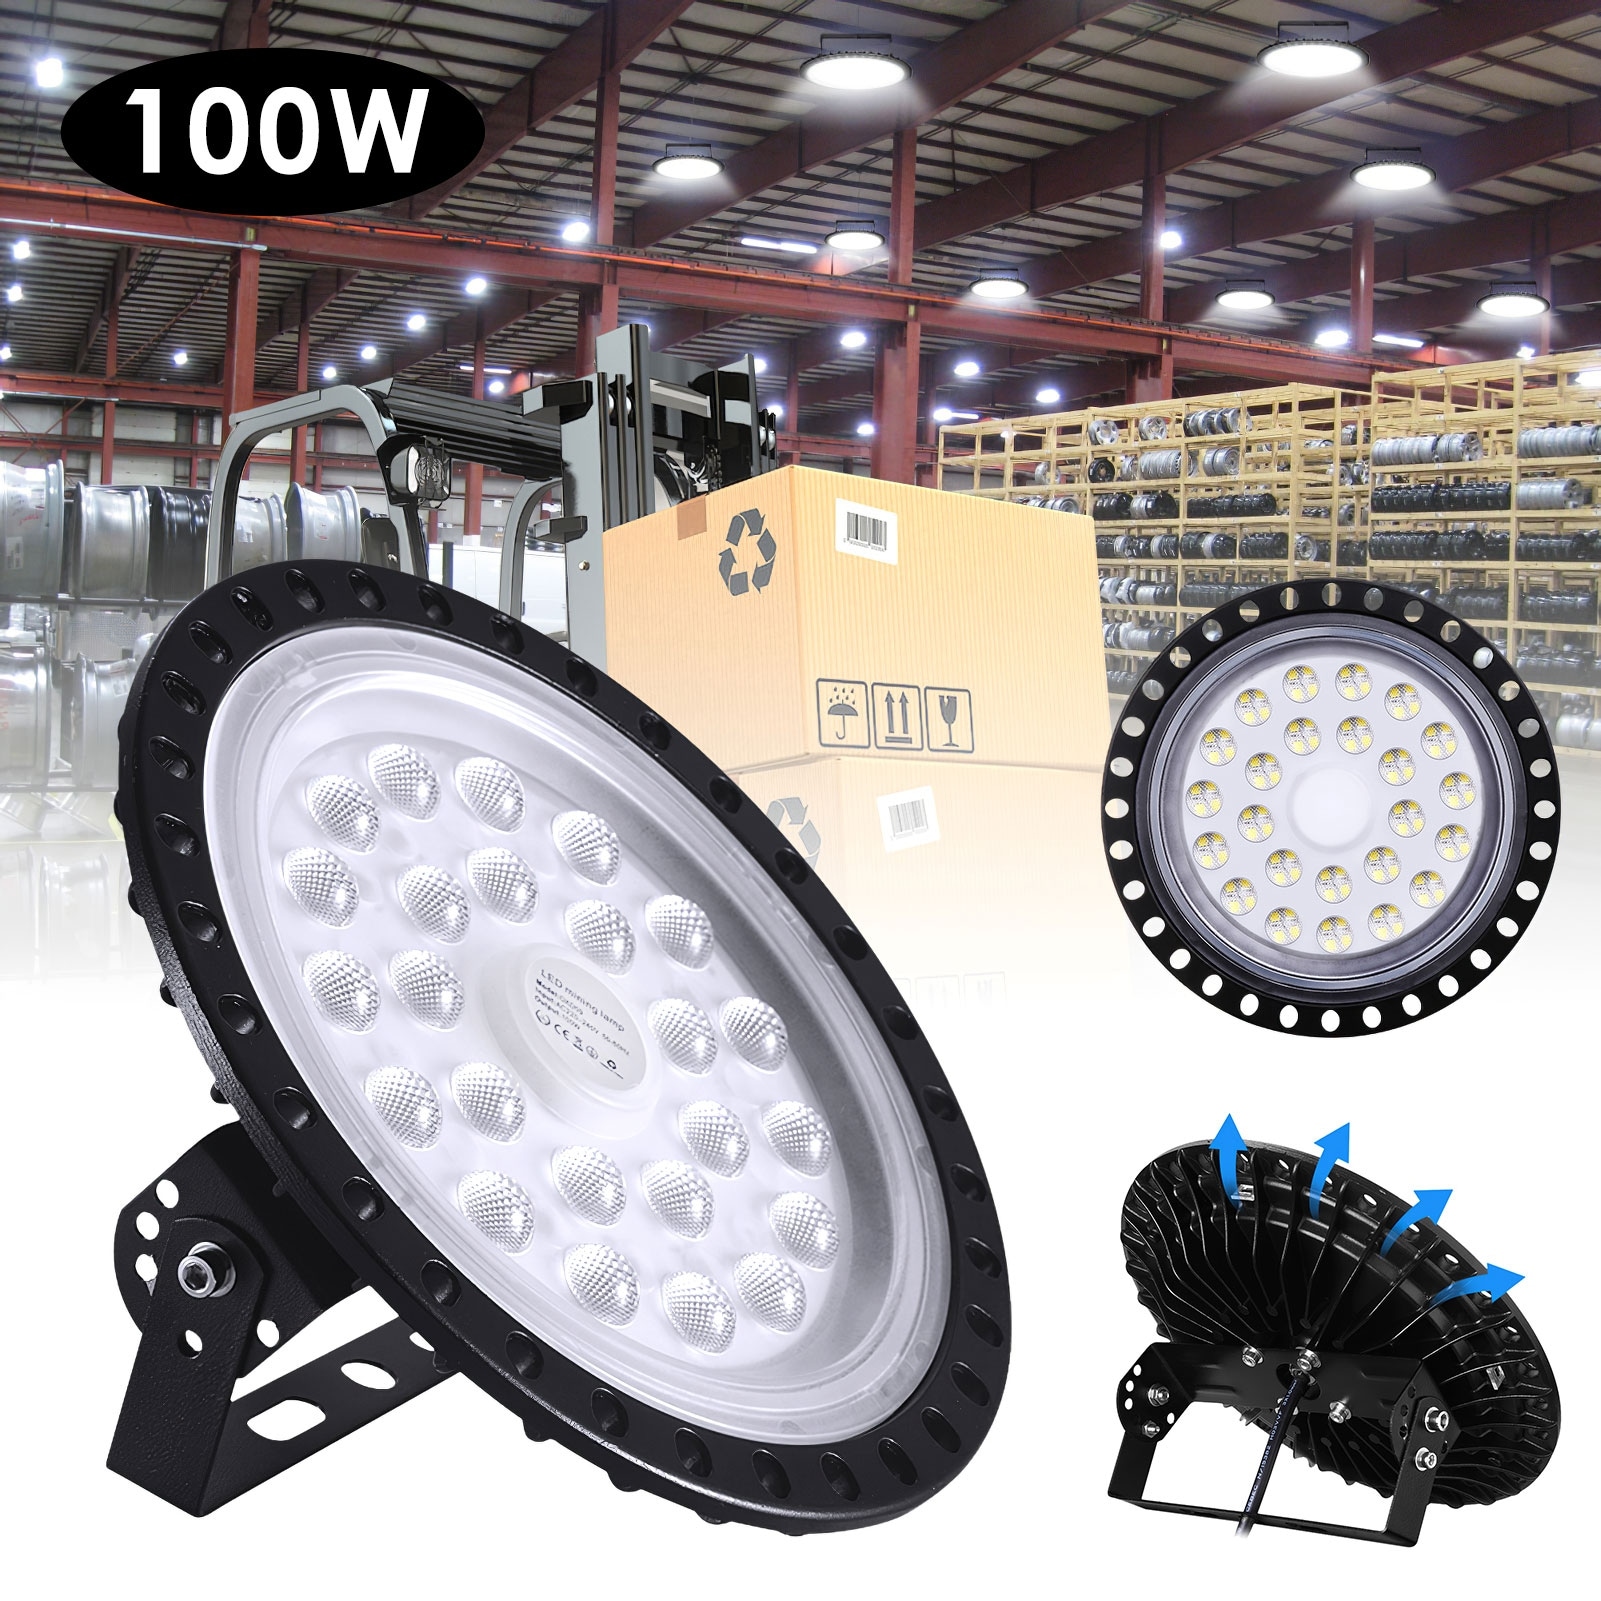 500W 300W 200W 100W 50W LED UFO High Low Bay Light Factory Warehouse Lighting 